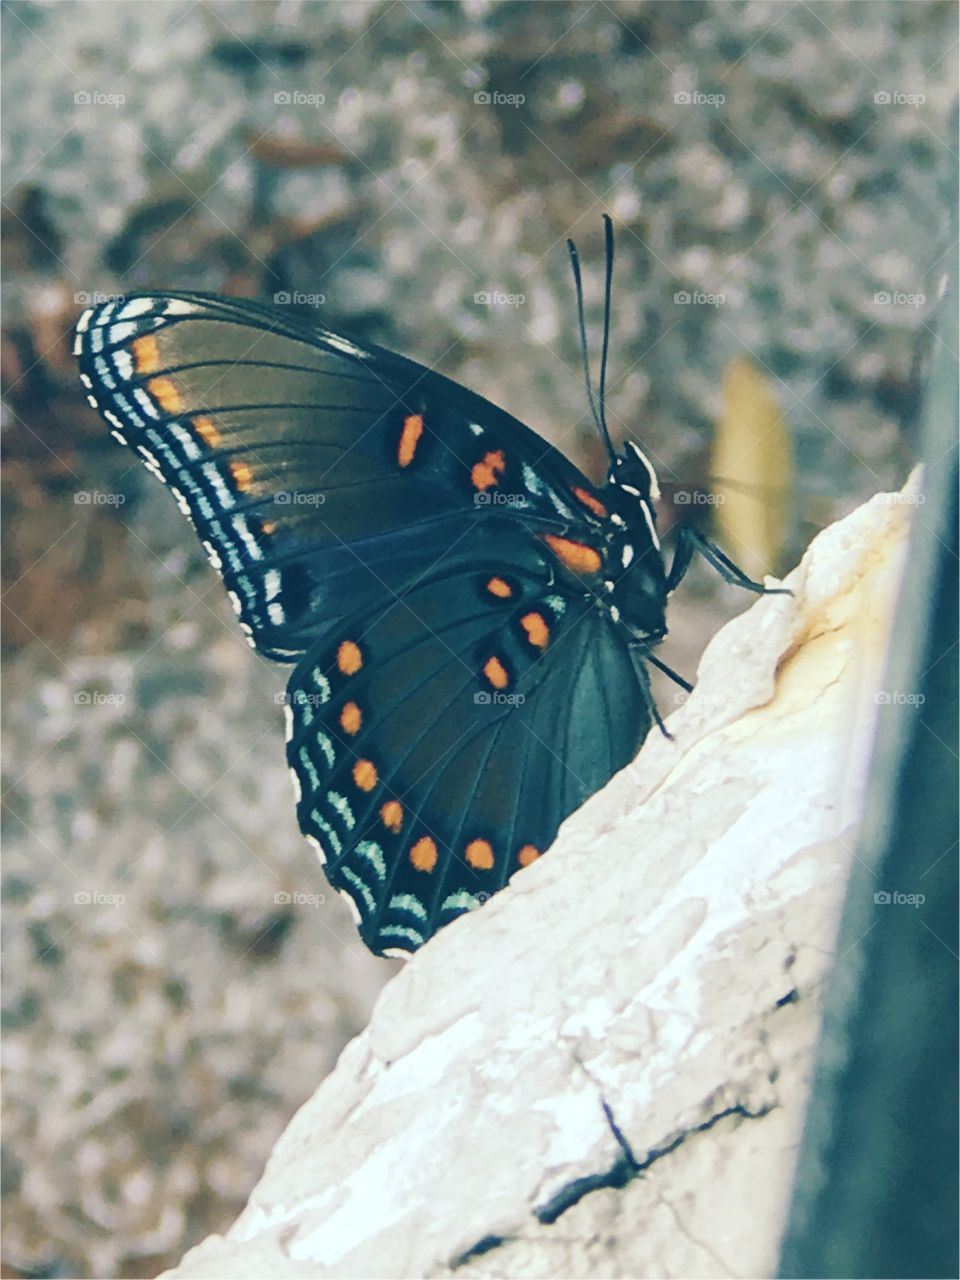 My butterfly 